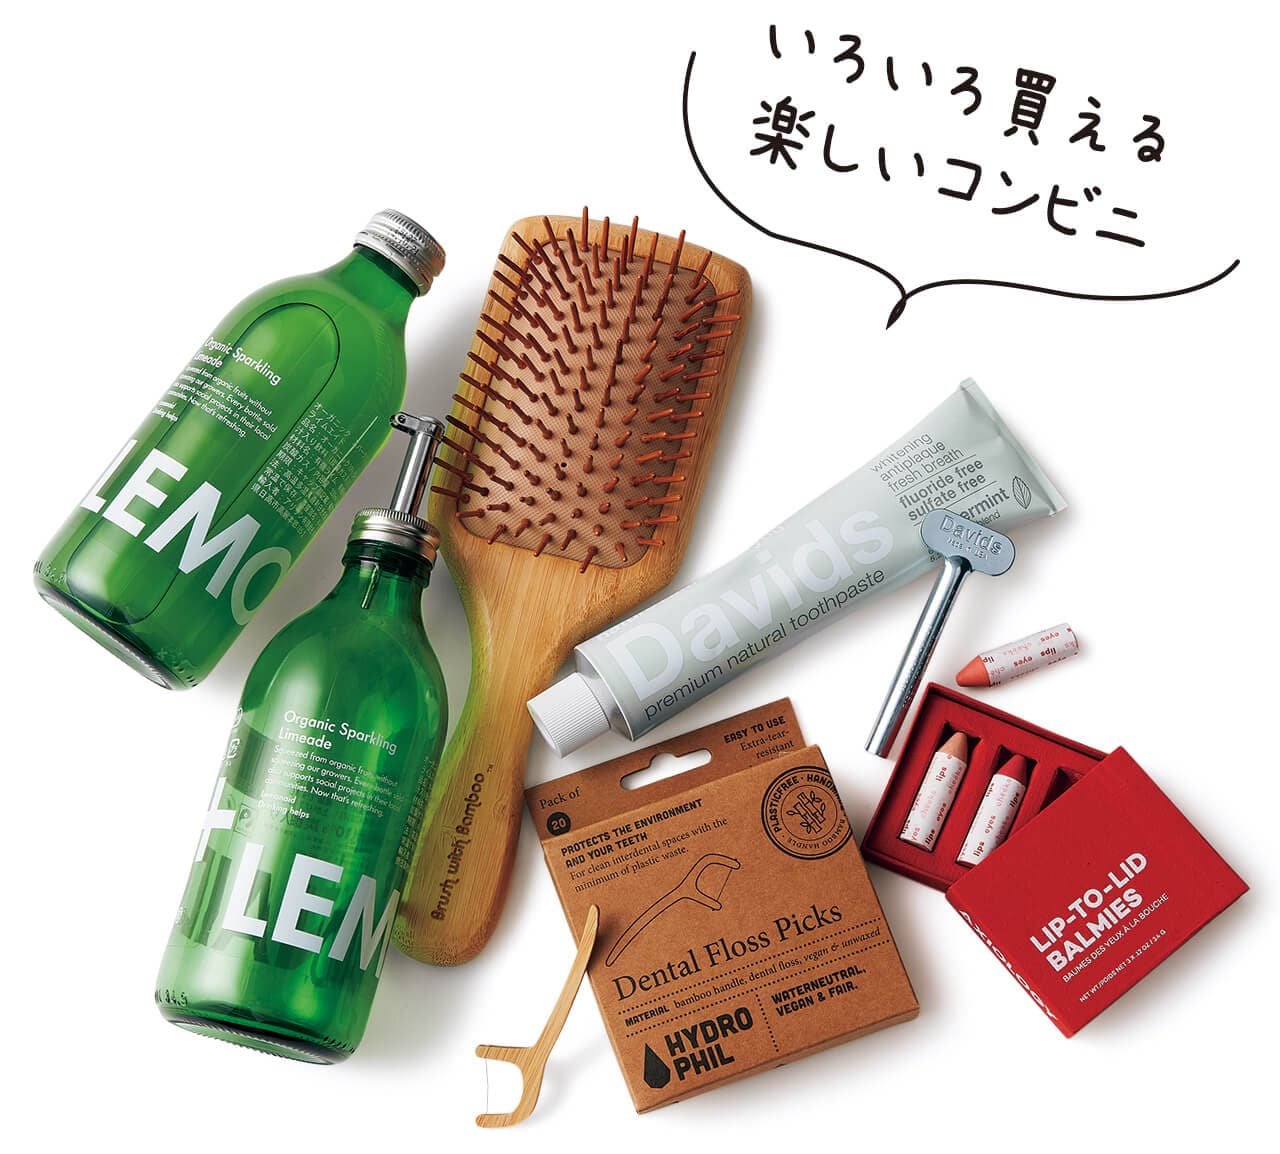 エシカルをテーマにした 独自セレクトのコンビニ いろいろ買える楽しいコンビニ リップバームセット￥7020（Axiology）・トゥースペースト￥1980（Davids）・デンタルフロス￥880（HYDRO PHIL）・ヘアブラシ￥3390（Bamboo Hair Brush by Brush with Bamboo）・ドリンク￥473（Lemonaid）・替えノズル￥363／エシカルコンビニ